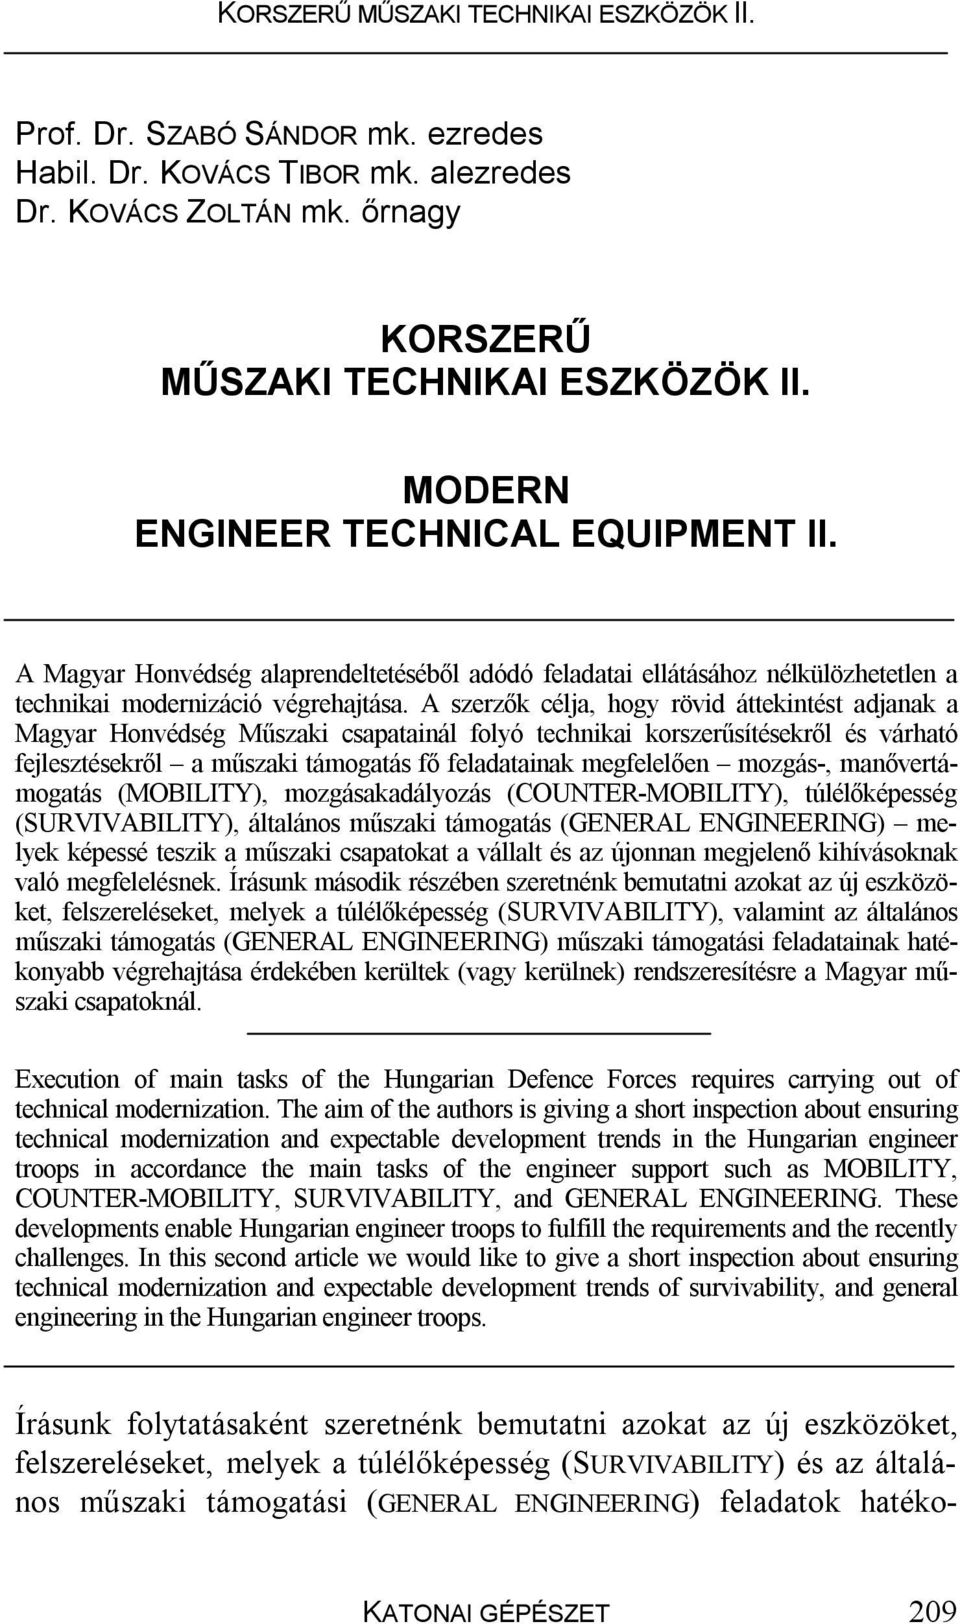 A szerzők célja, hogy rövid áttekintést adjanak a Magyar Honvédség Műszaki csapatainál folyó technikai korszerűsítésekről és várható fejlesztésekről a műszaki támogatás fő feladatainak megfelelően